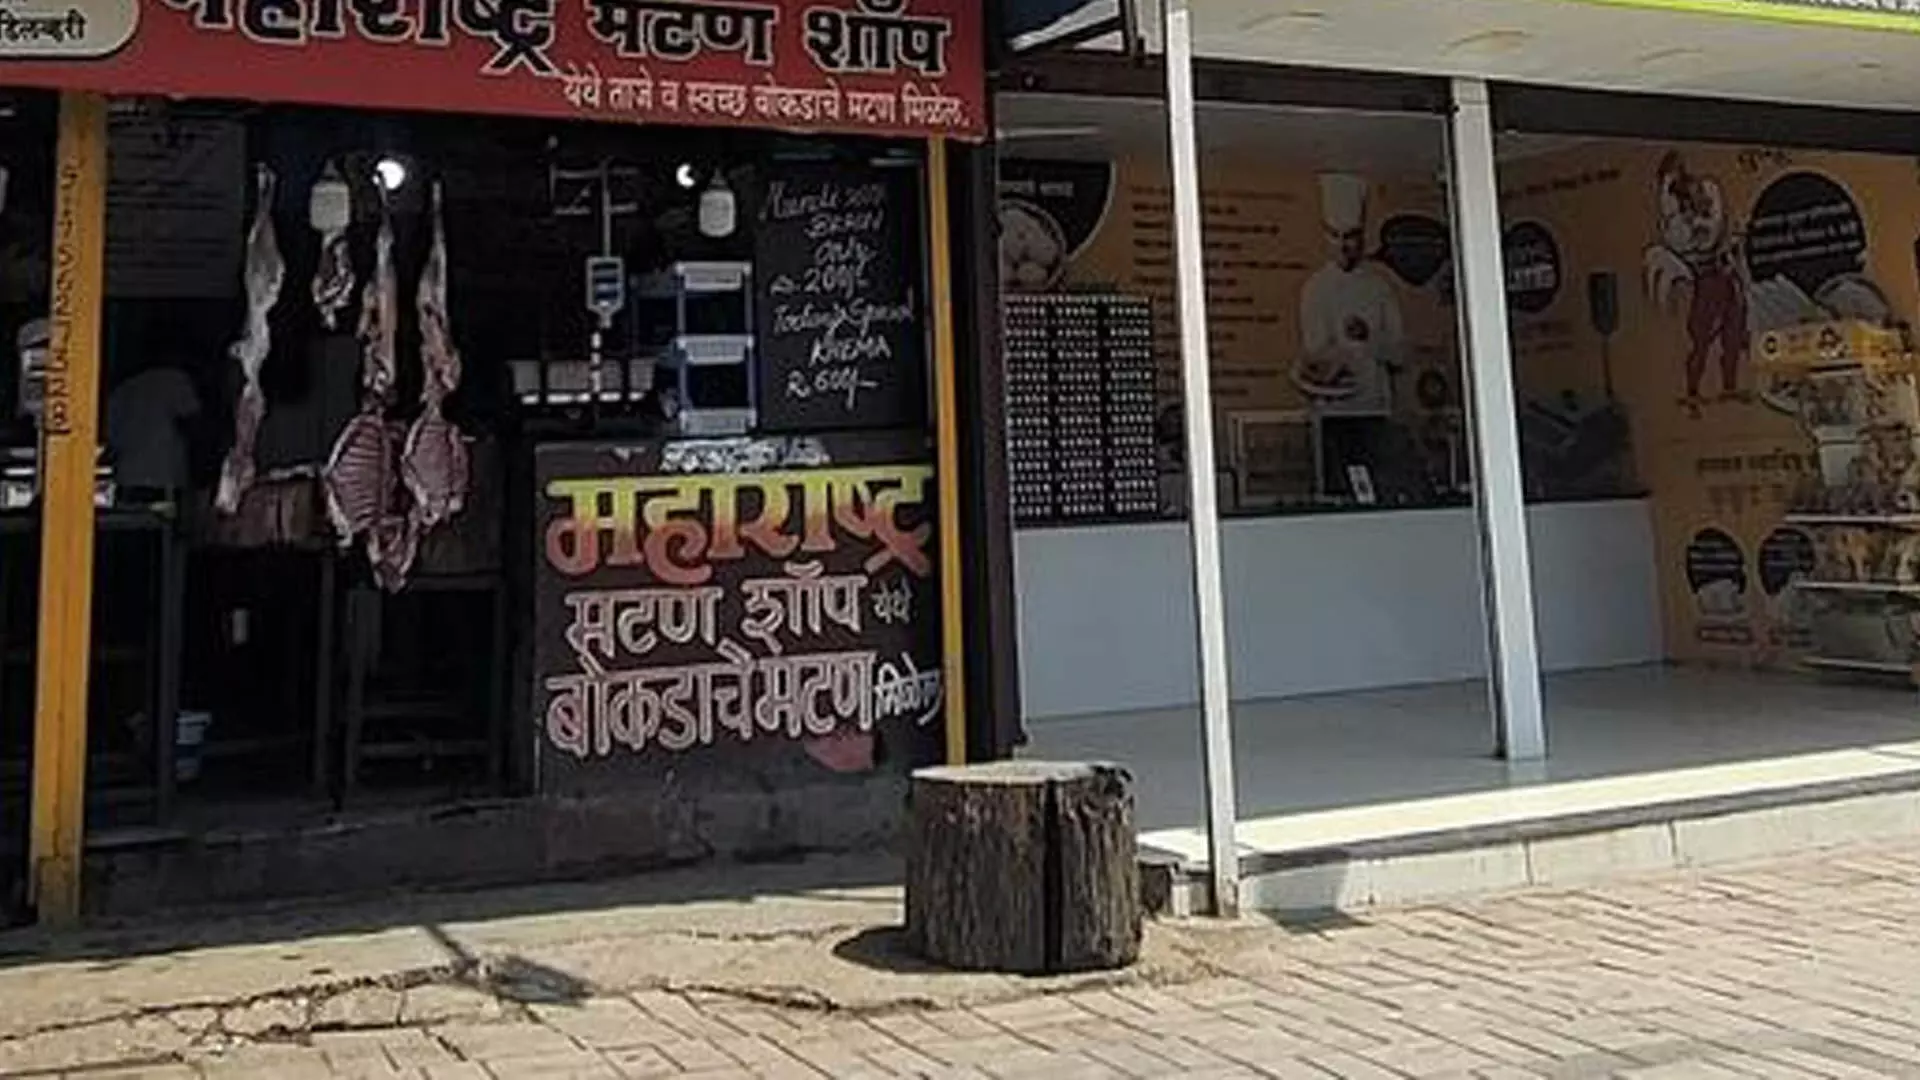 PUNE: पुणे में अवैध मांस की दुकानों के कारण स्वच्छता संबंधी समस्याएं